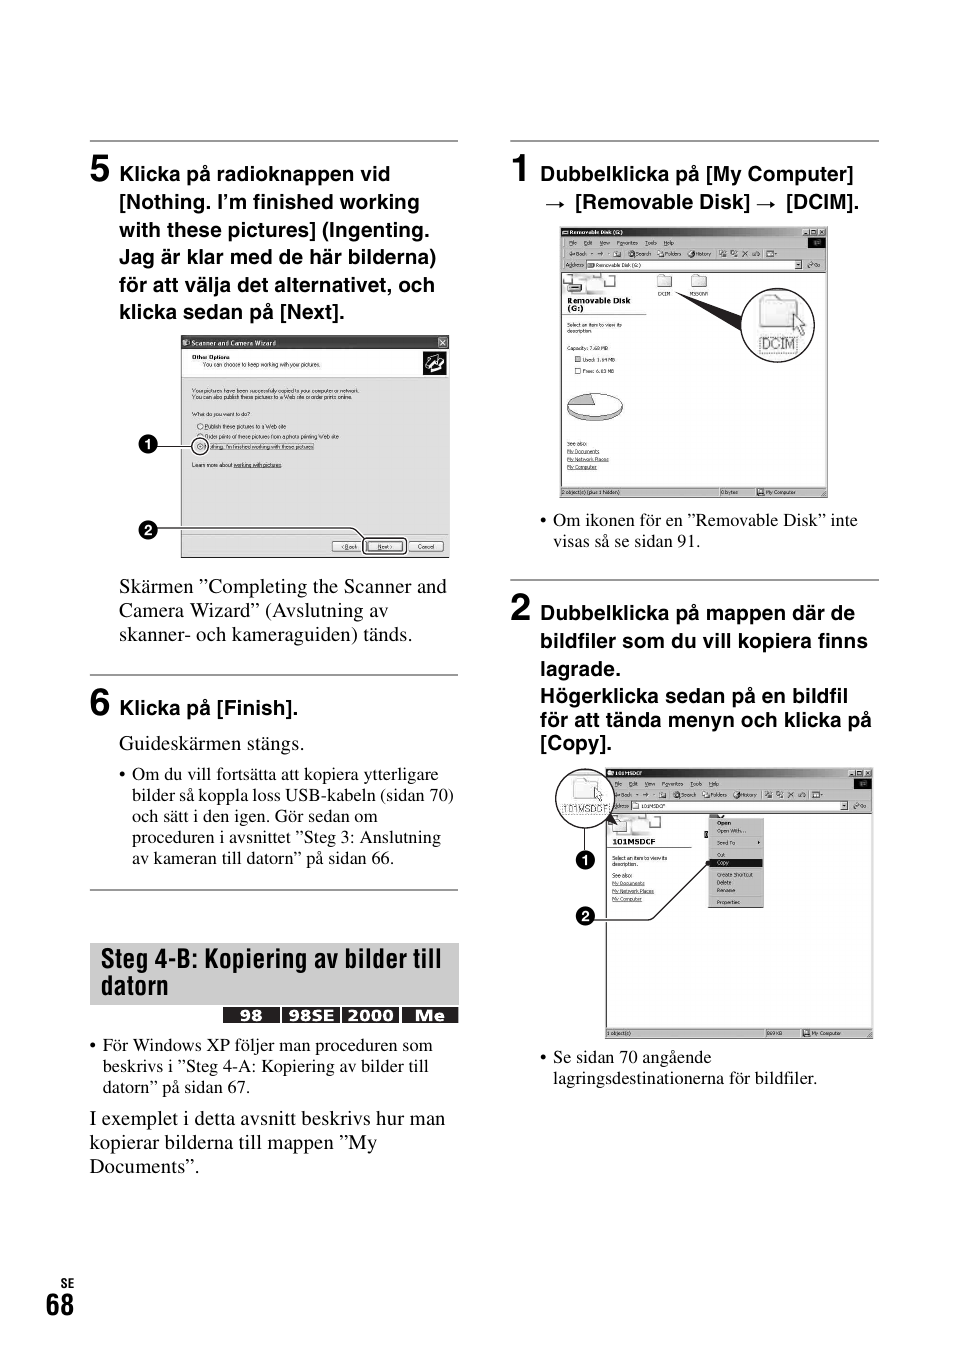 Steg 4-b: kopiering av bilder till datorn | Инструкция по эксплуатации Sony DSC-H1 | Страница 194 / 235